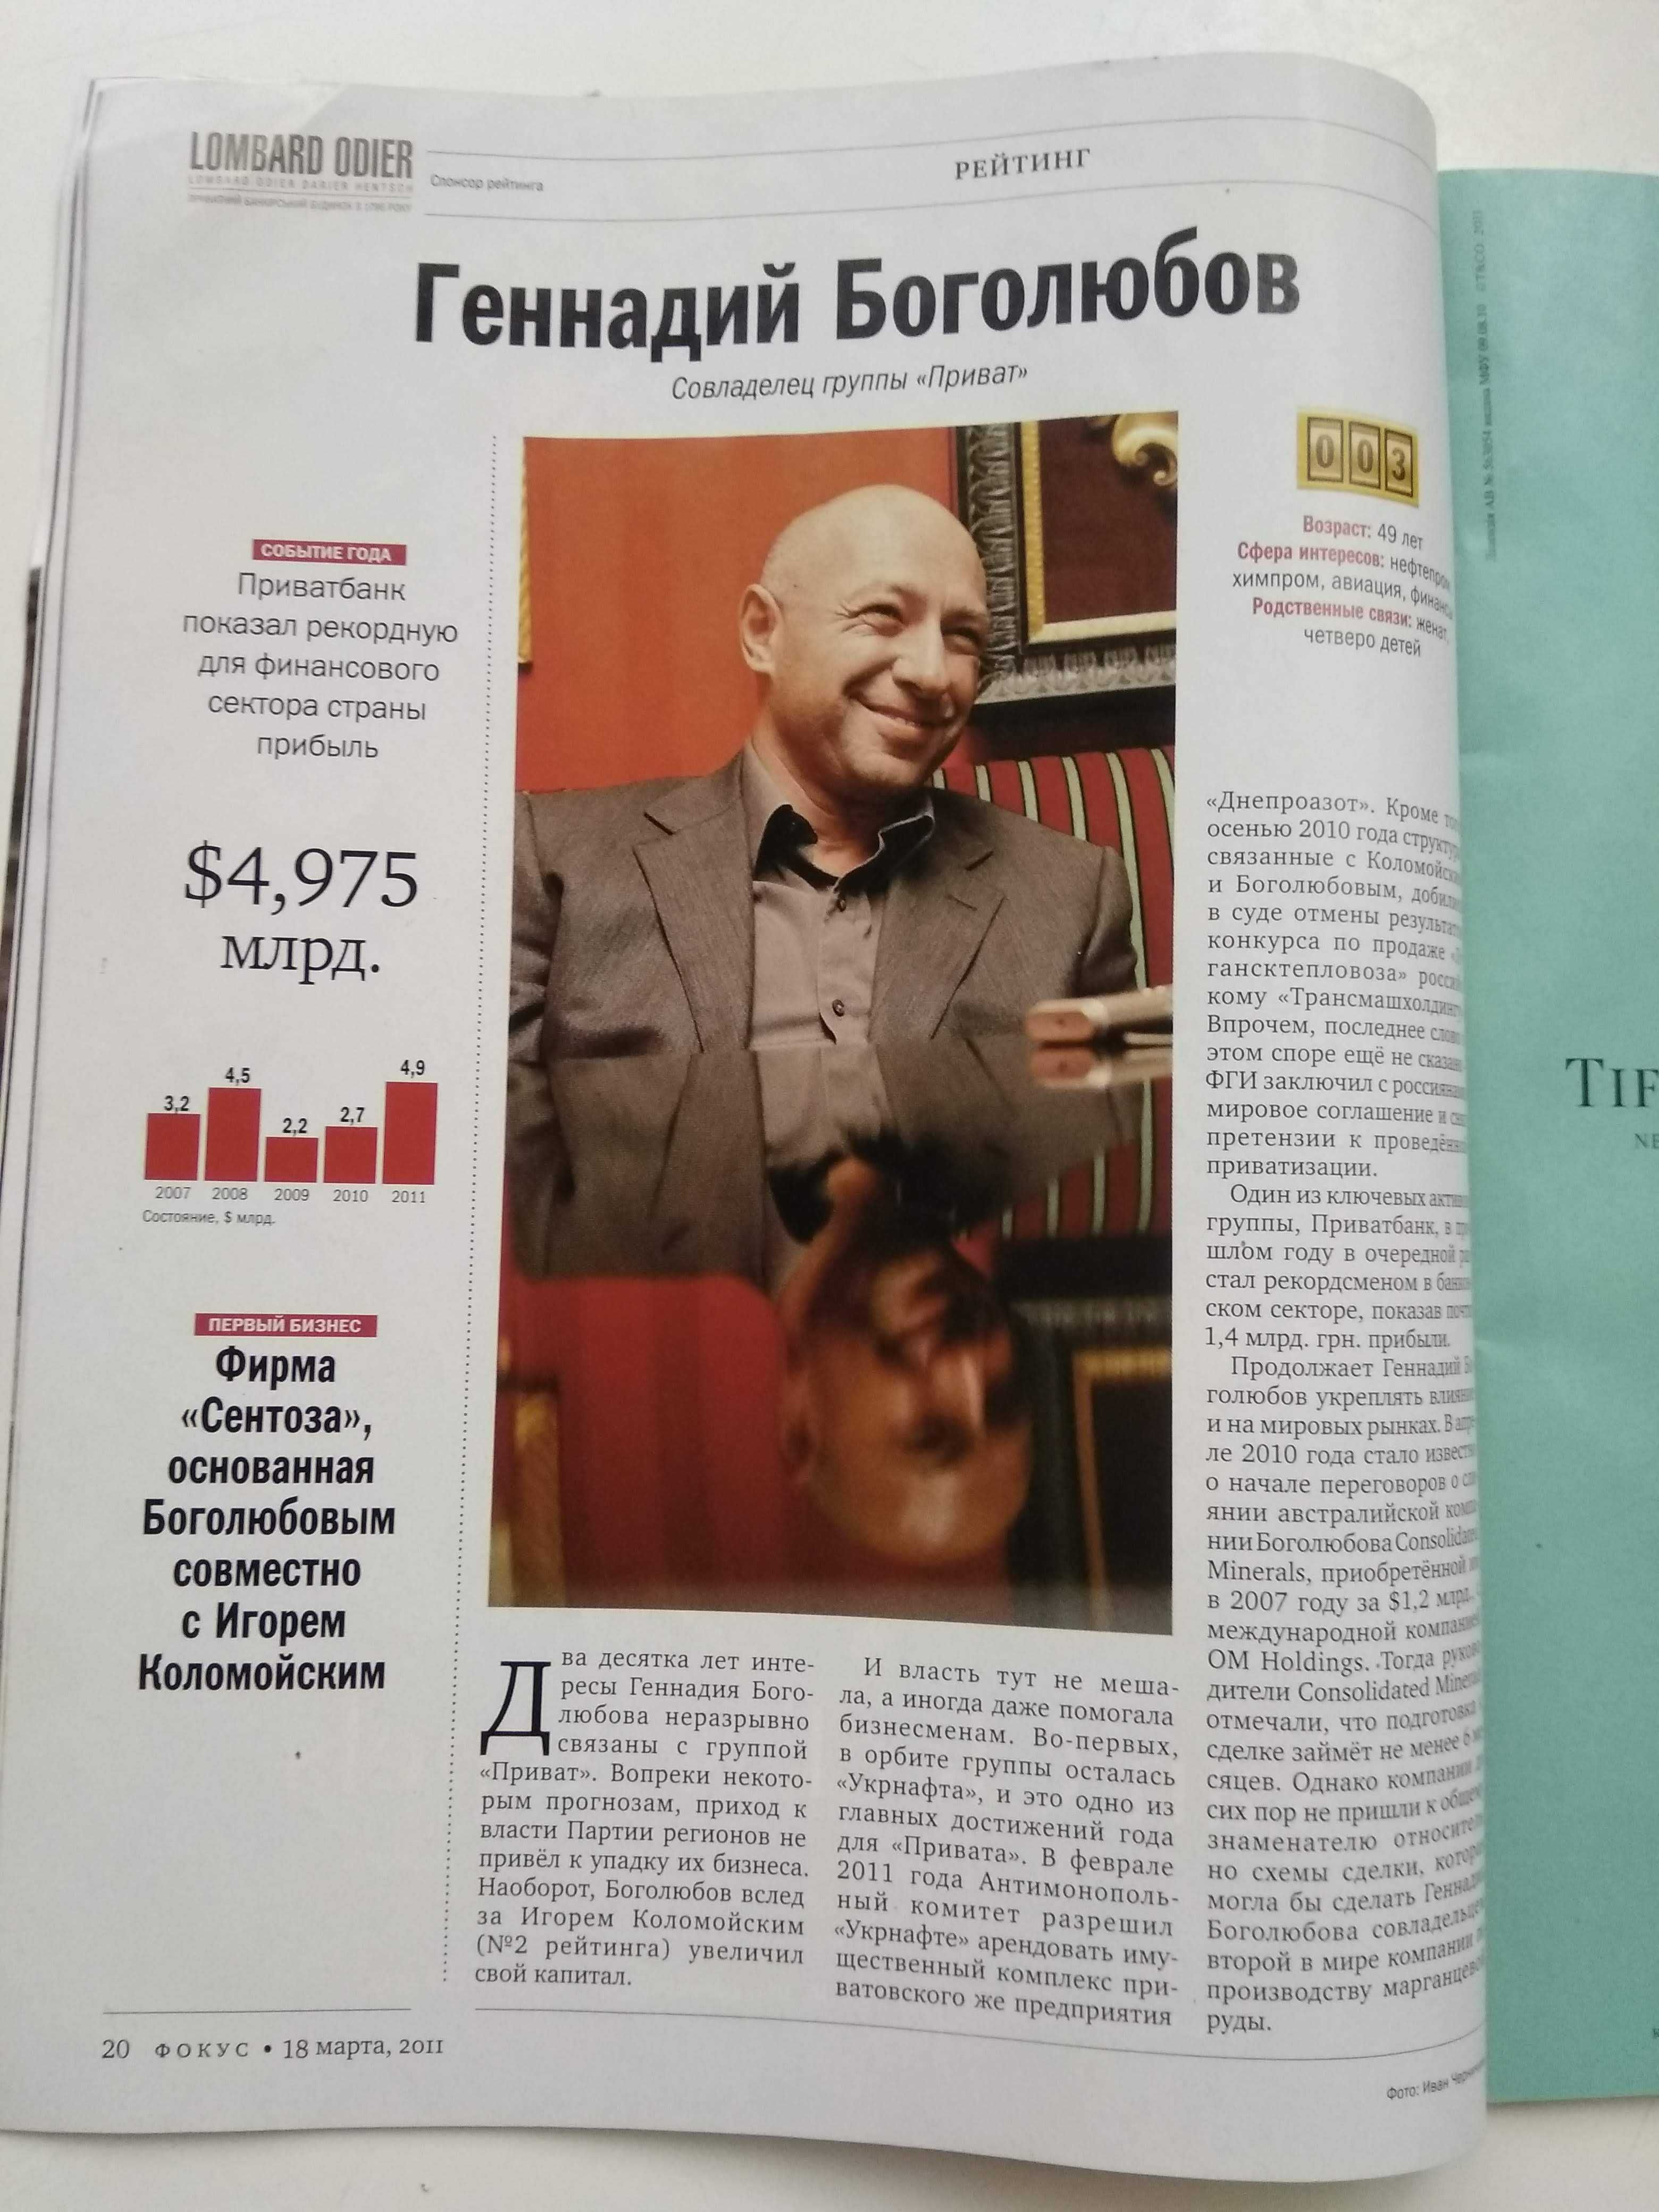 Журнал Фокус. рейтинг 200 самых богатых людей Украины 2011г.